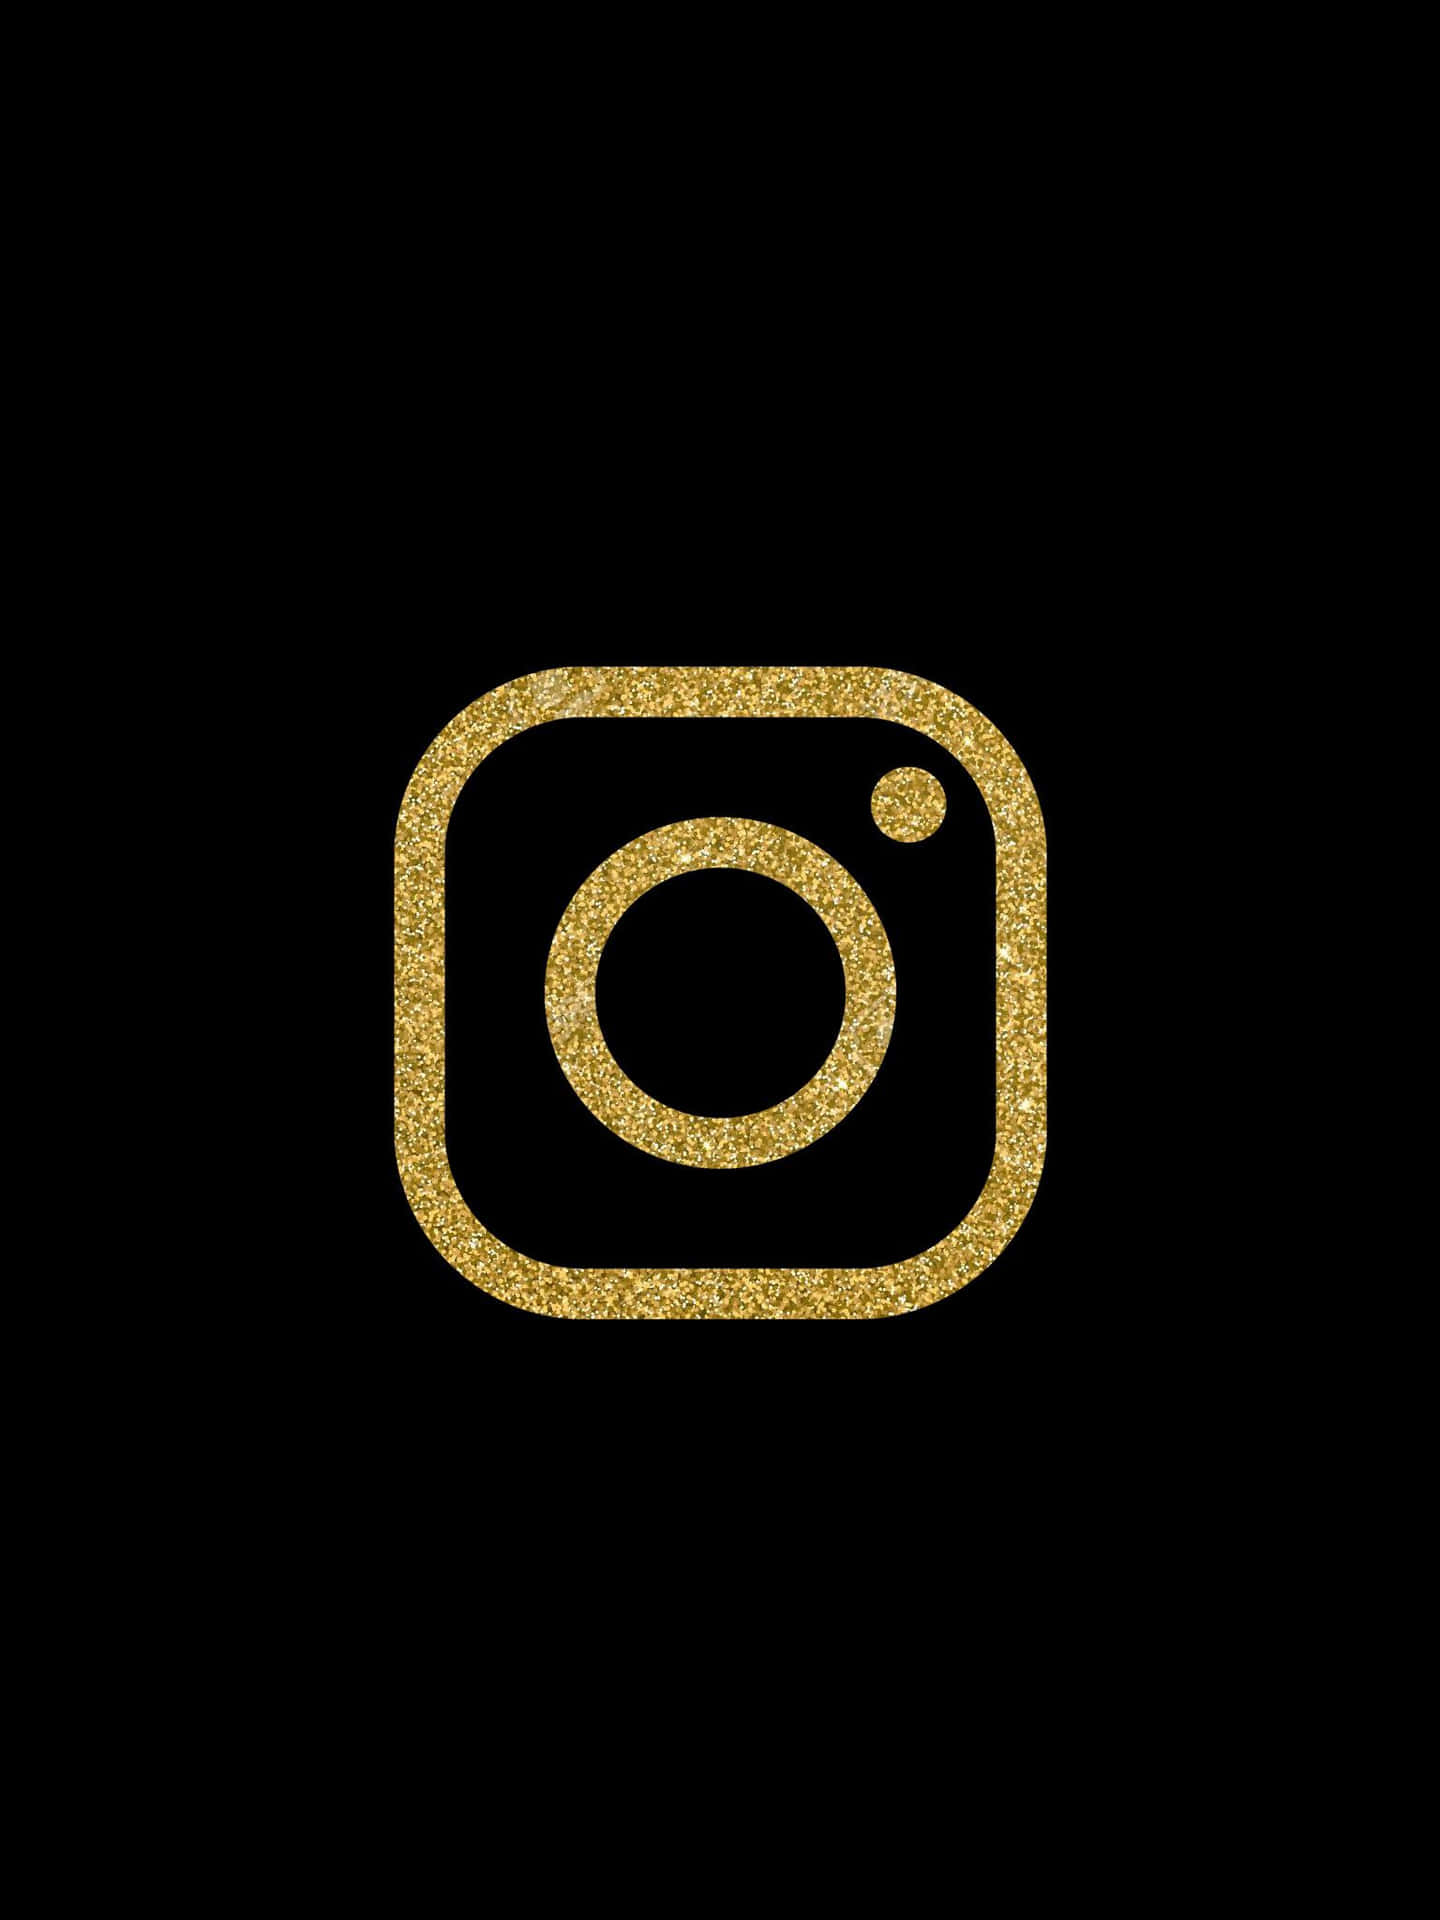 Instagramlogotyp I Guldfärg På Svart Bakgrund.